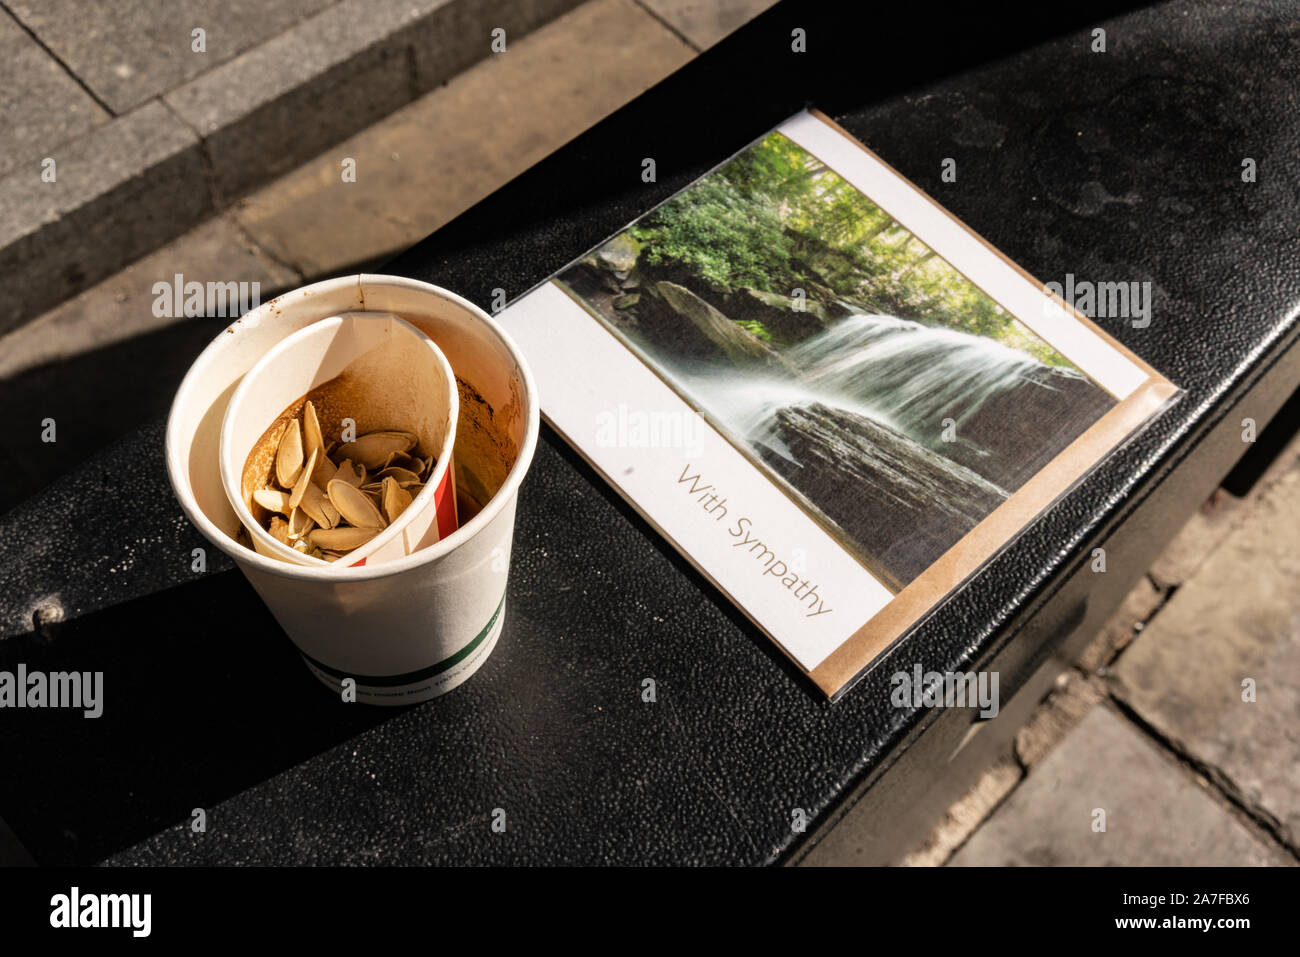 He encontrado esta taza de café y desechados con tarjeta de pésame a la izquierda detrás en una rampa fuera de un edificio comercial, Londres, Reino Unido Foto de stock